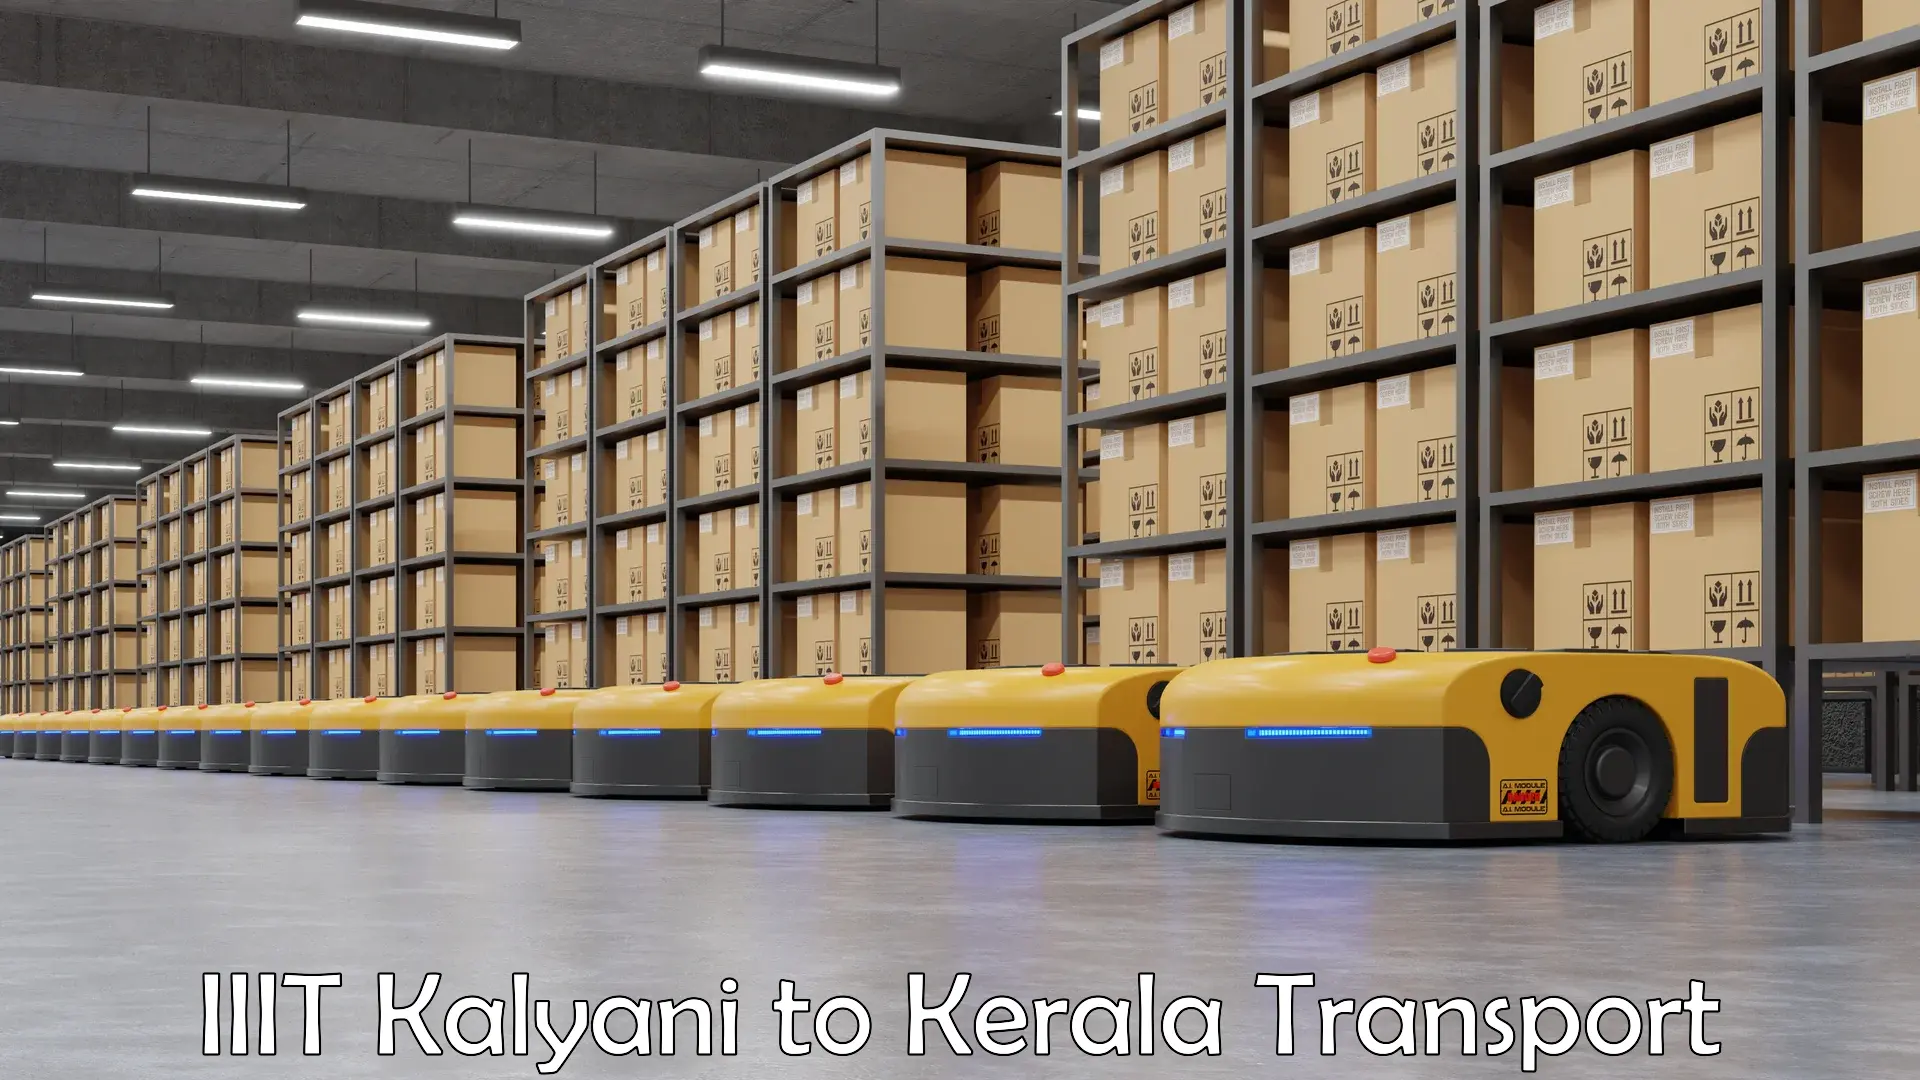 Interstate transport services IIIT Kalyani to Shoranur